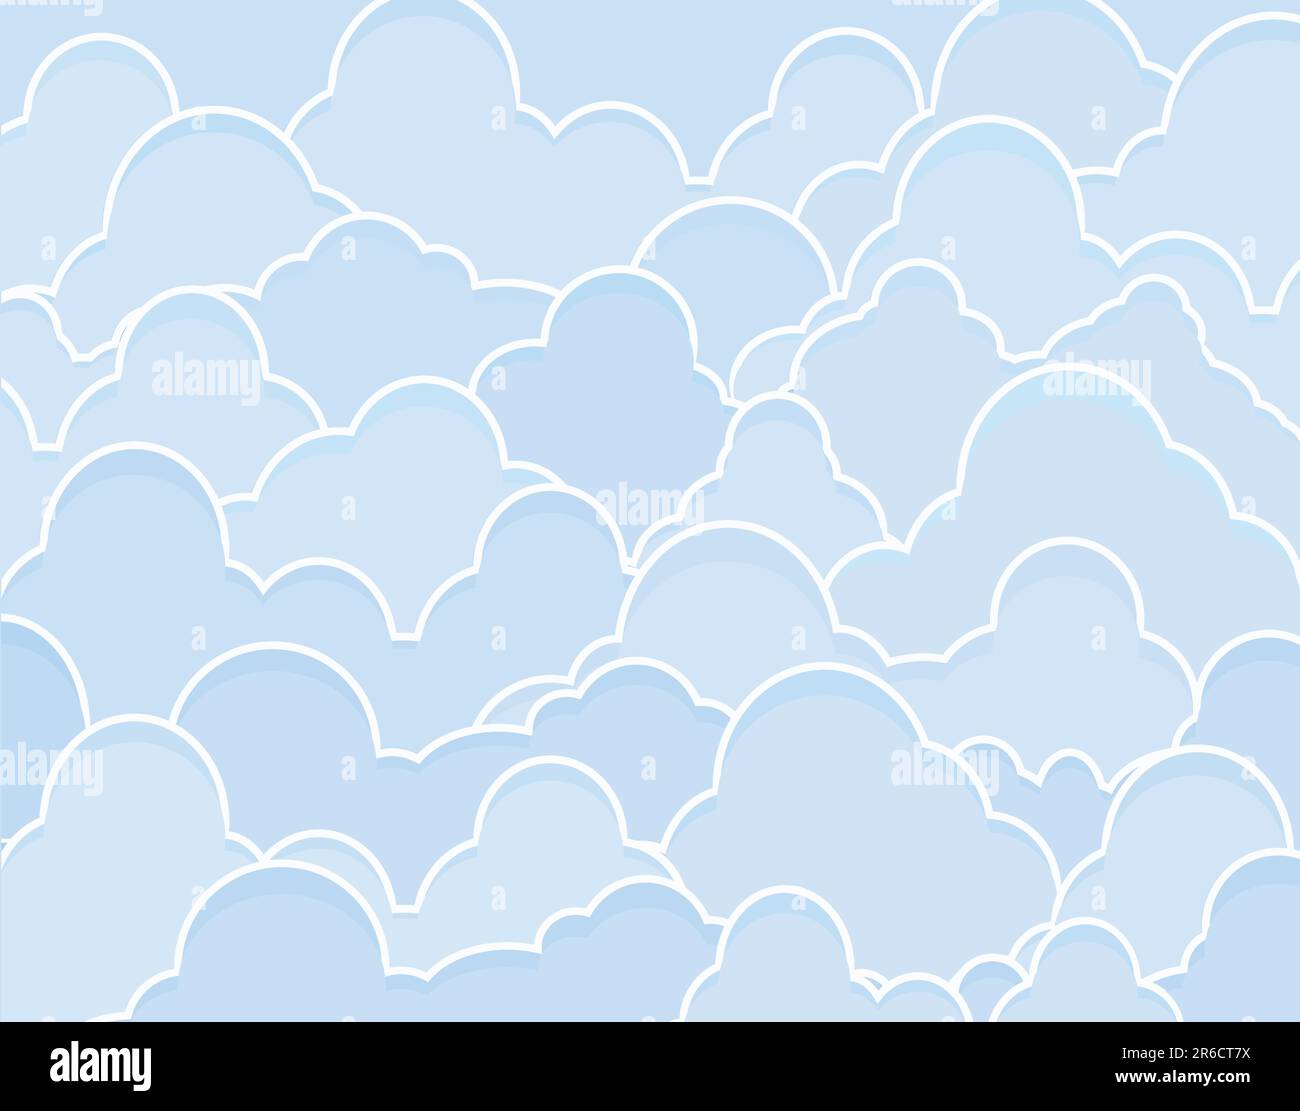 Hintergrund-editierbare Vektor-Illustration der blauen Cumulus-Wolken Stock Vektor